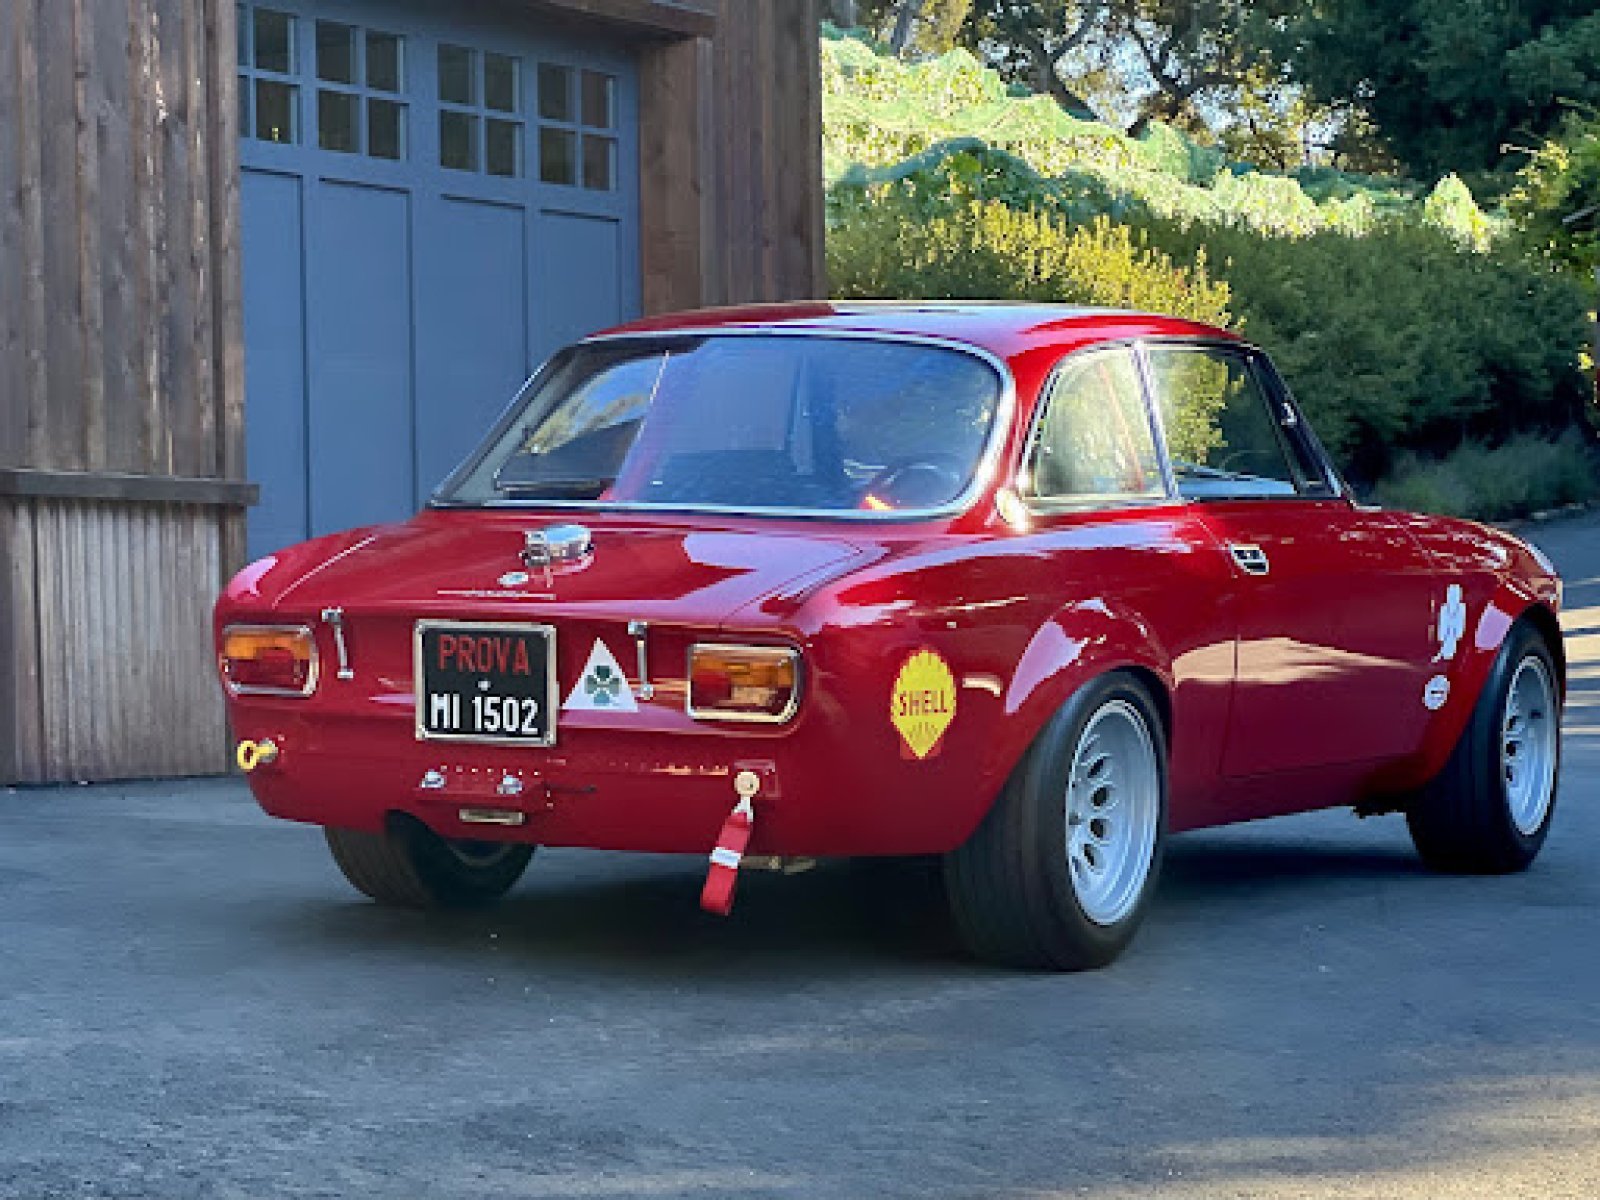 1969 Alfa Romeo 1750 Gtam